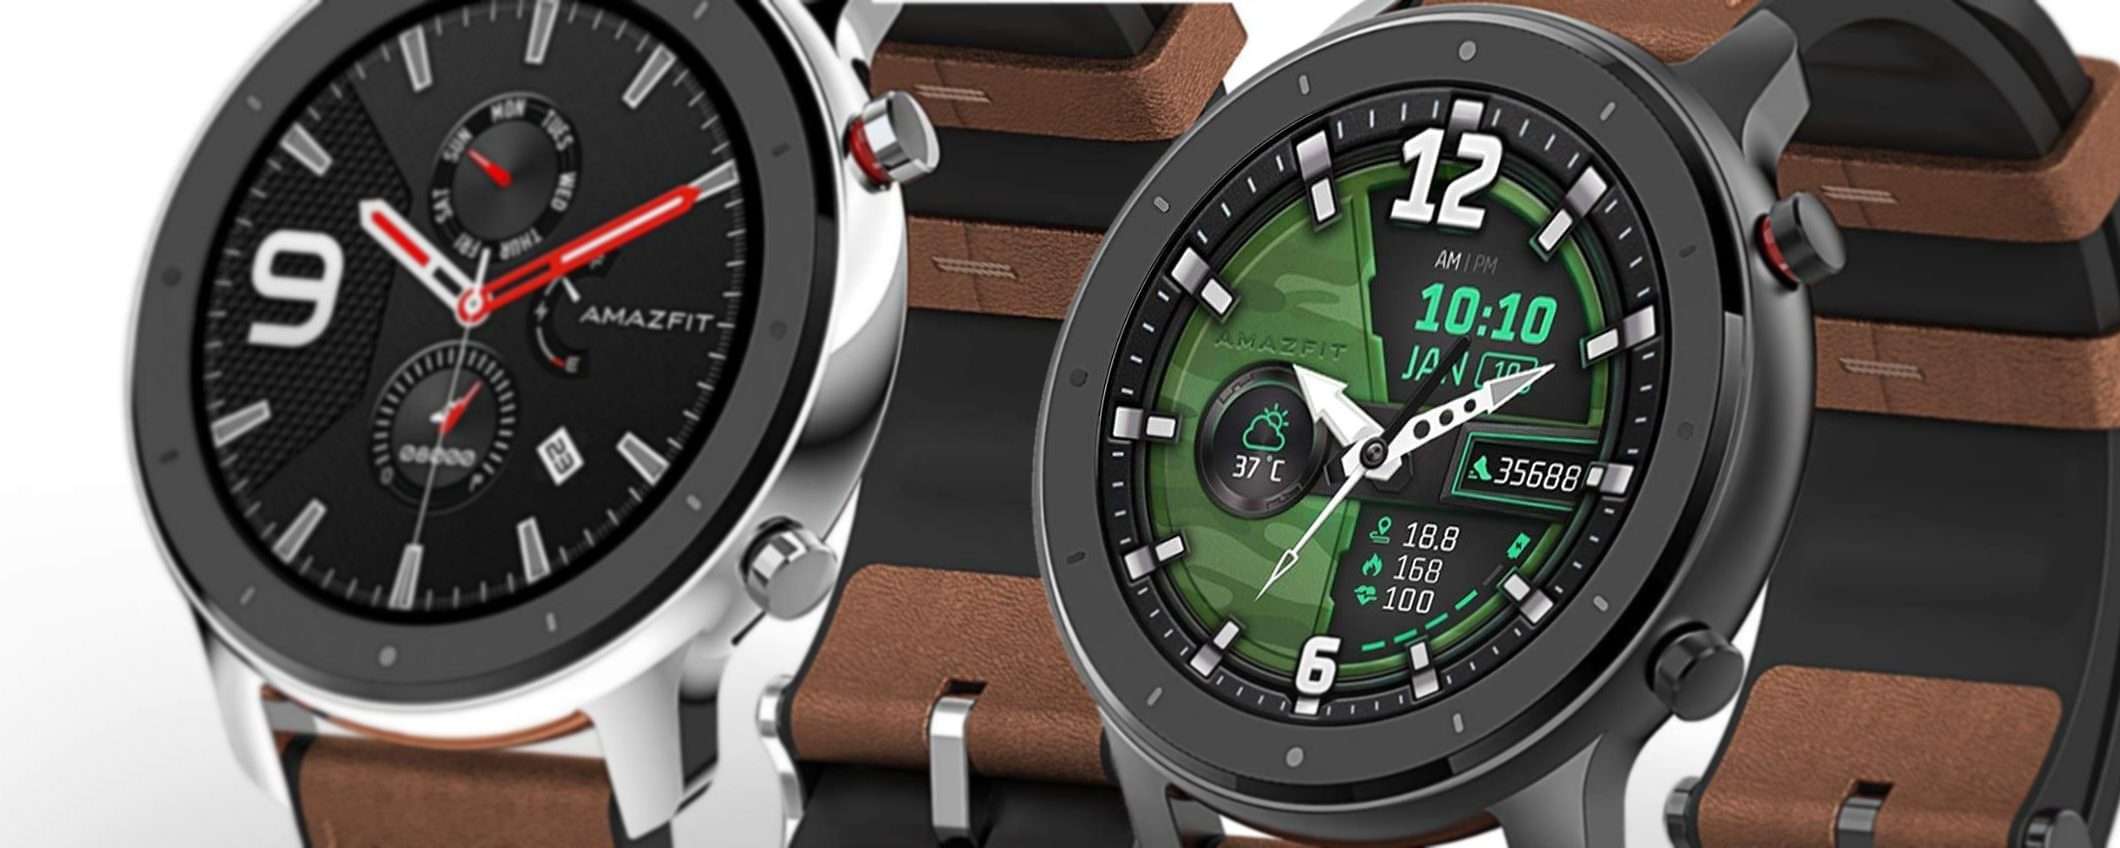 Amazfit GTR, smartwatch a prezzo BOMBA: in marcia!